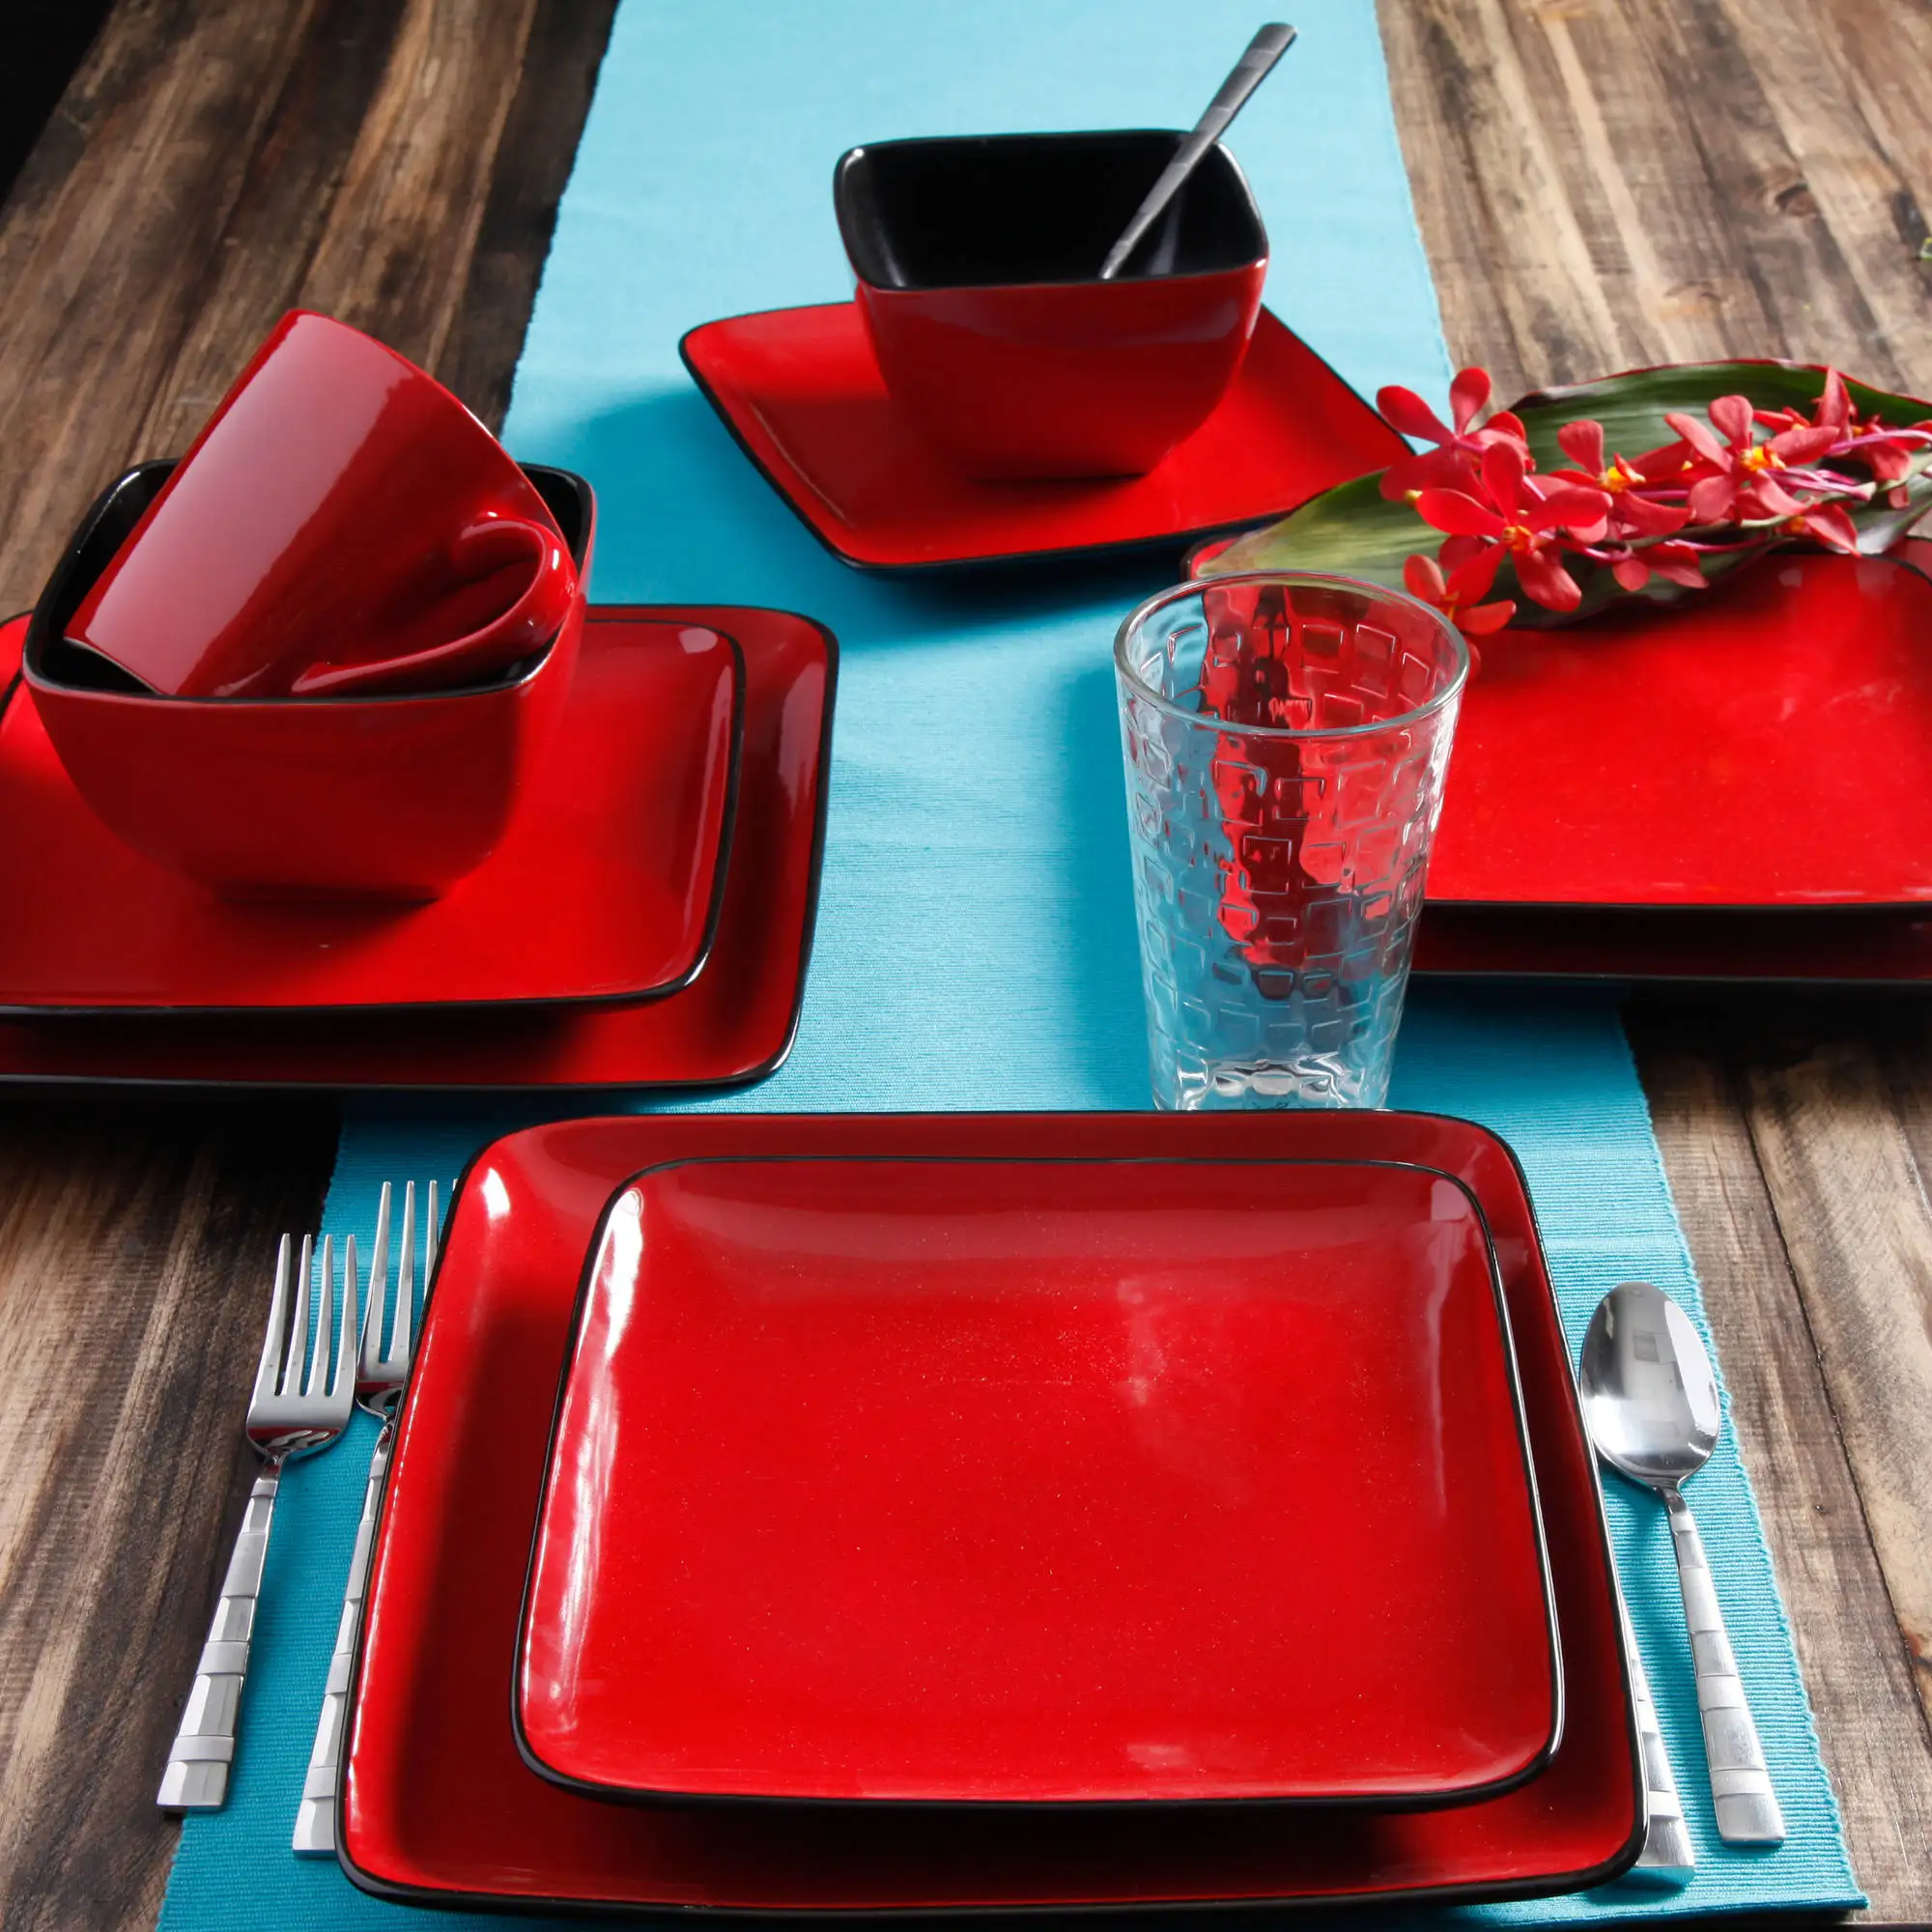 Купить красную посуду. Stoneware Dinnerware Set посуда. Красная посуда для кухни. Квадратная посуда. Посуда для ресторанов красного цвета.